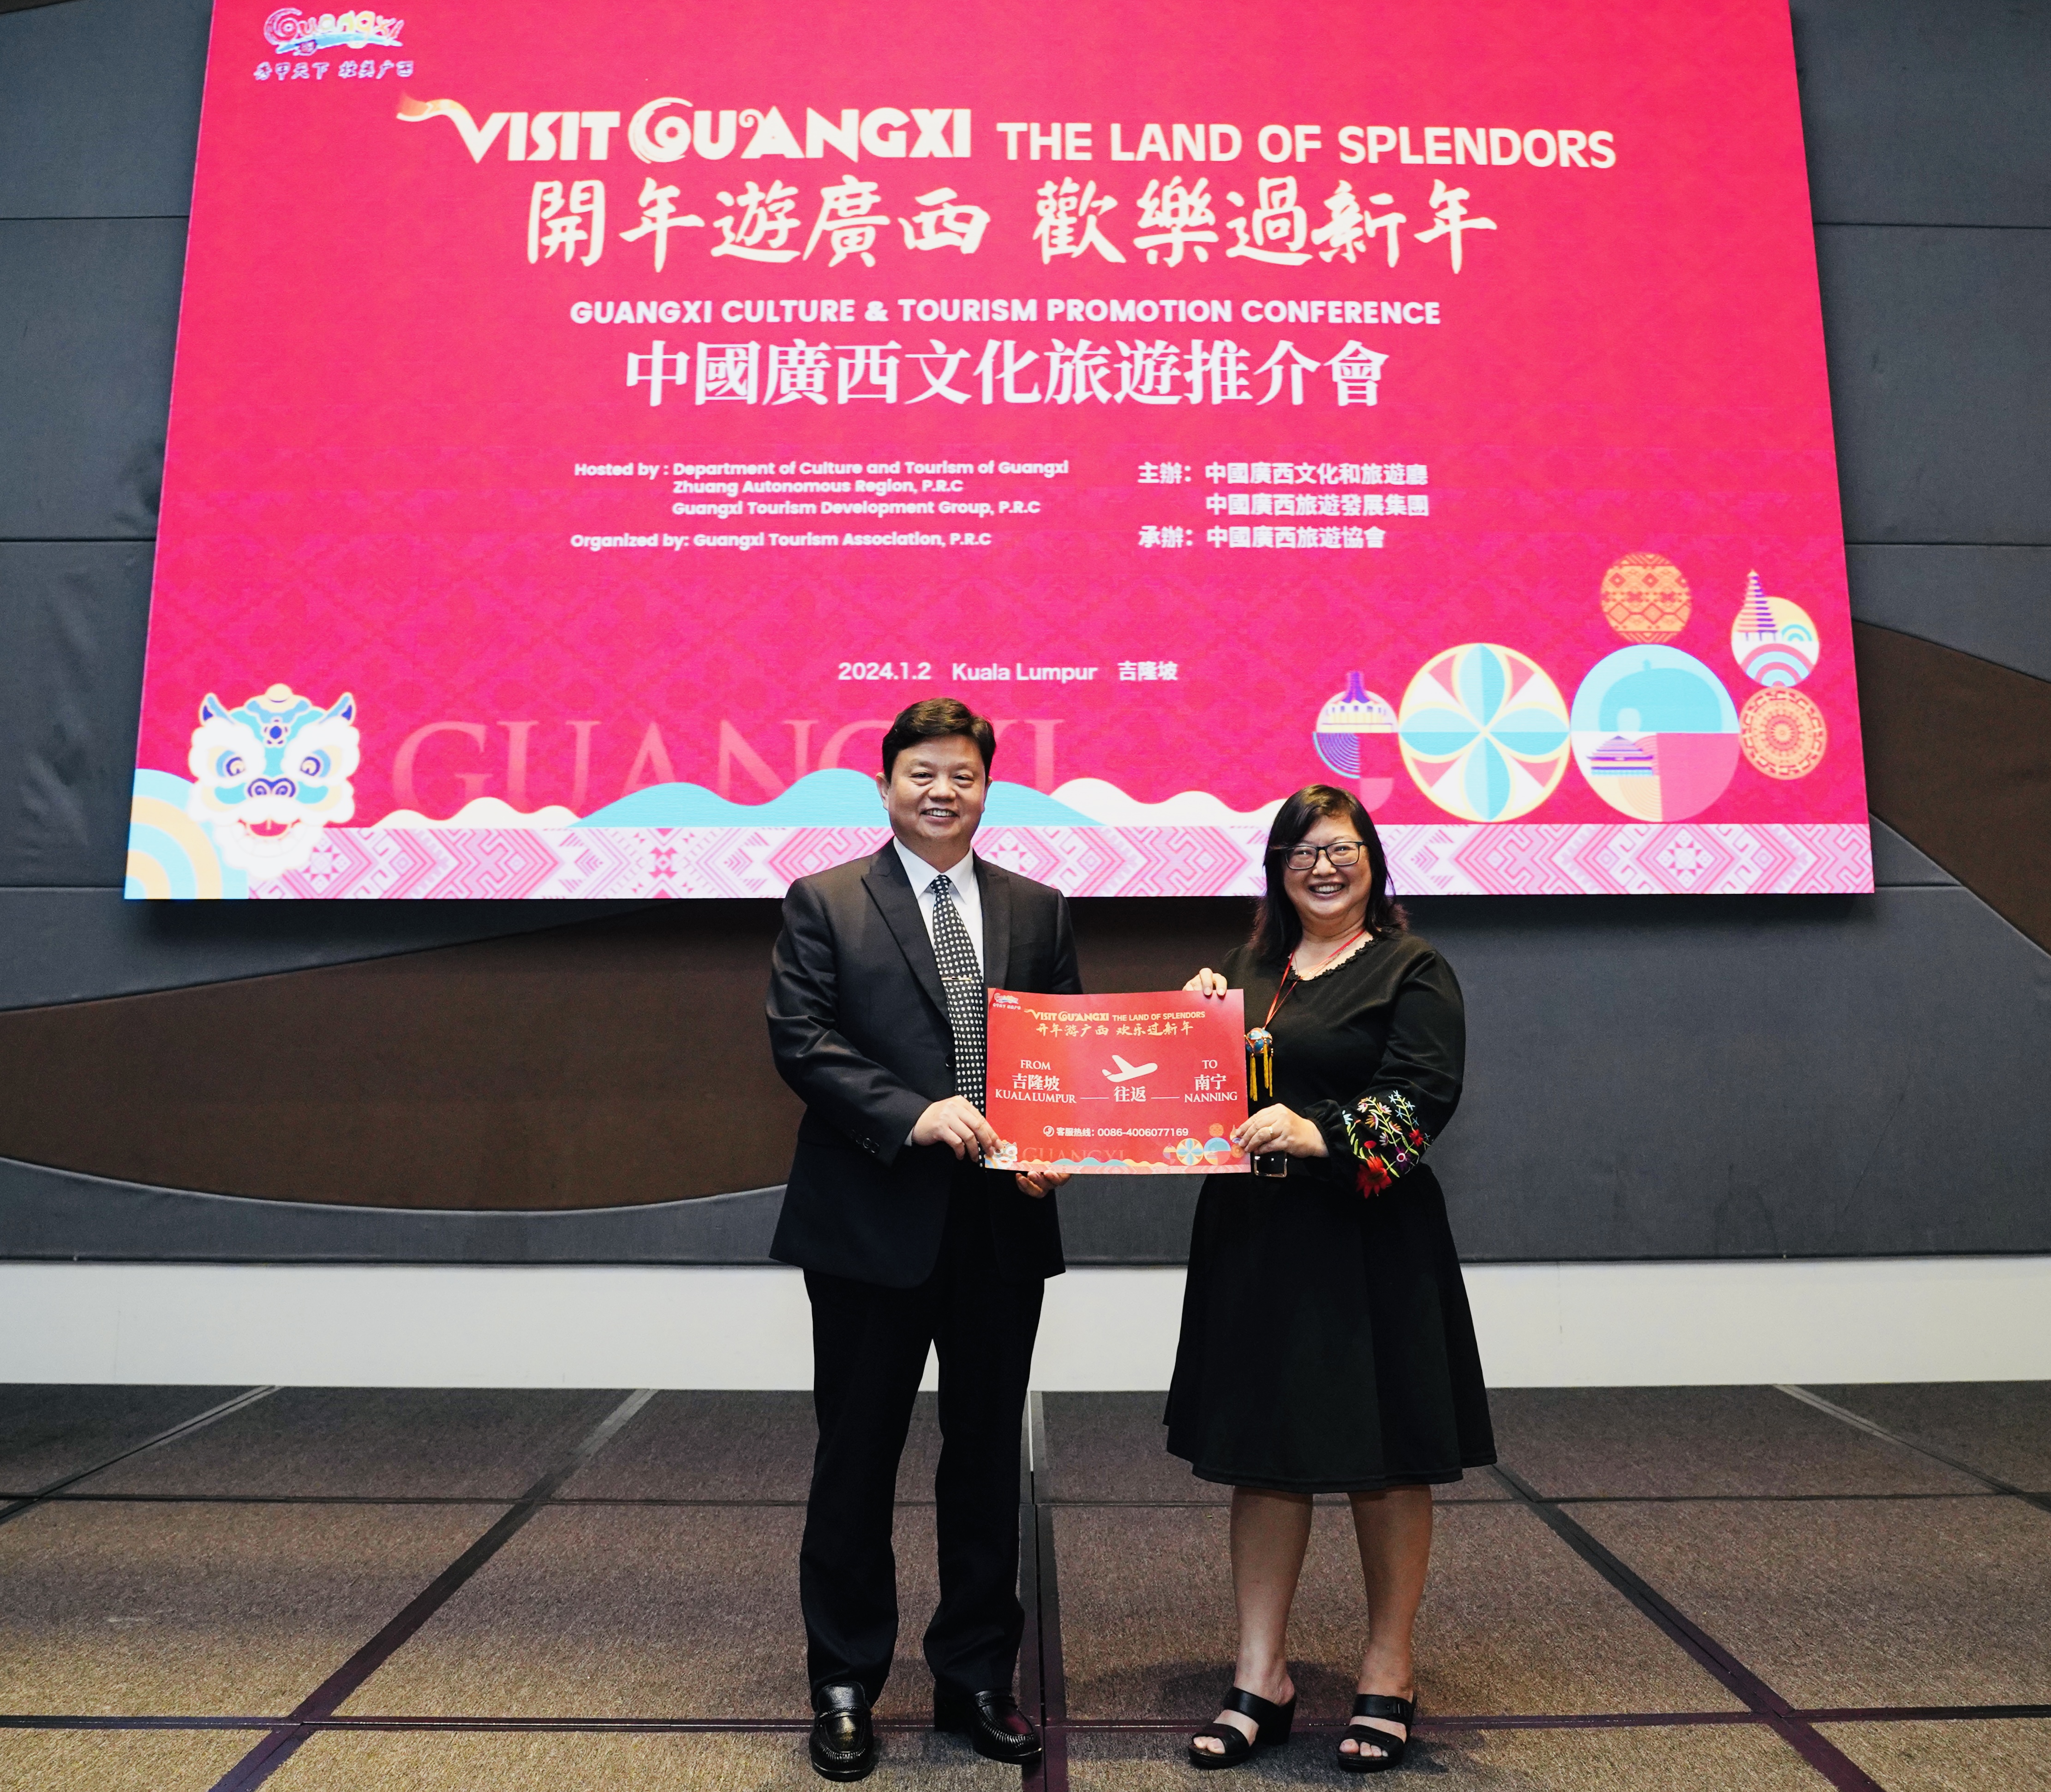 “开年游广西 欢乐过新年”中国广西文化旅游推介会在马来西亚吉隆坡举行